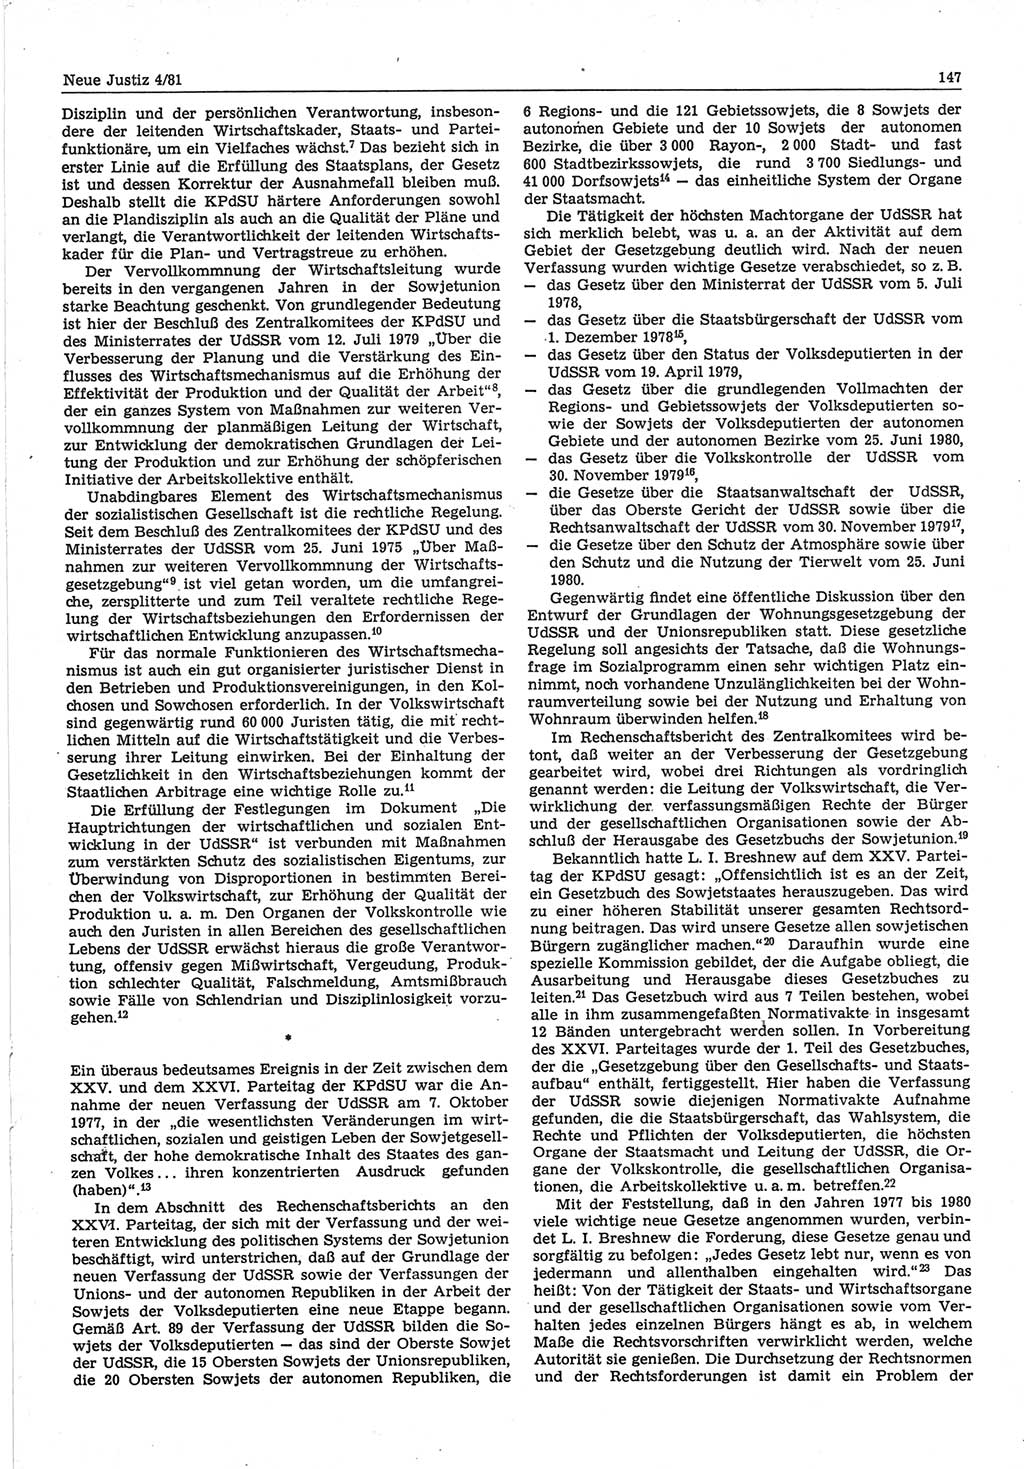 Neue Justiz (NJ), Zeitschrift für sozialistisches Recht und Gesetzlichkeit [Deutsche Demokratische Republik (DDR)], 35. Jahrgang 1981, Seite 147 (NJ DDR 1981, S. 147)